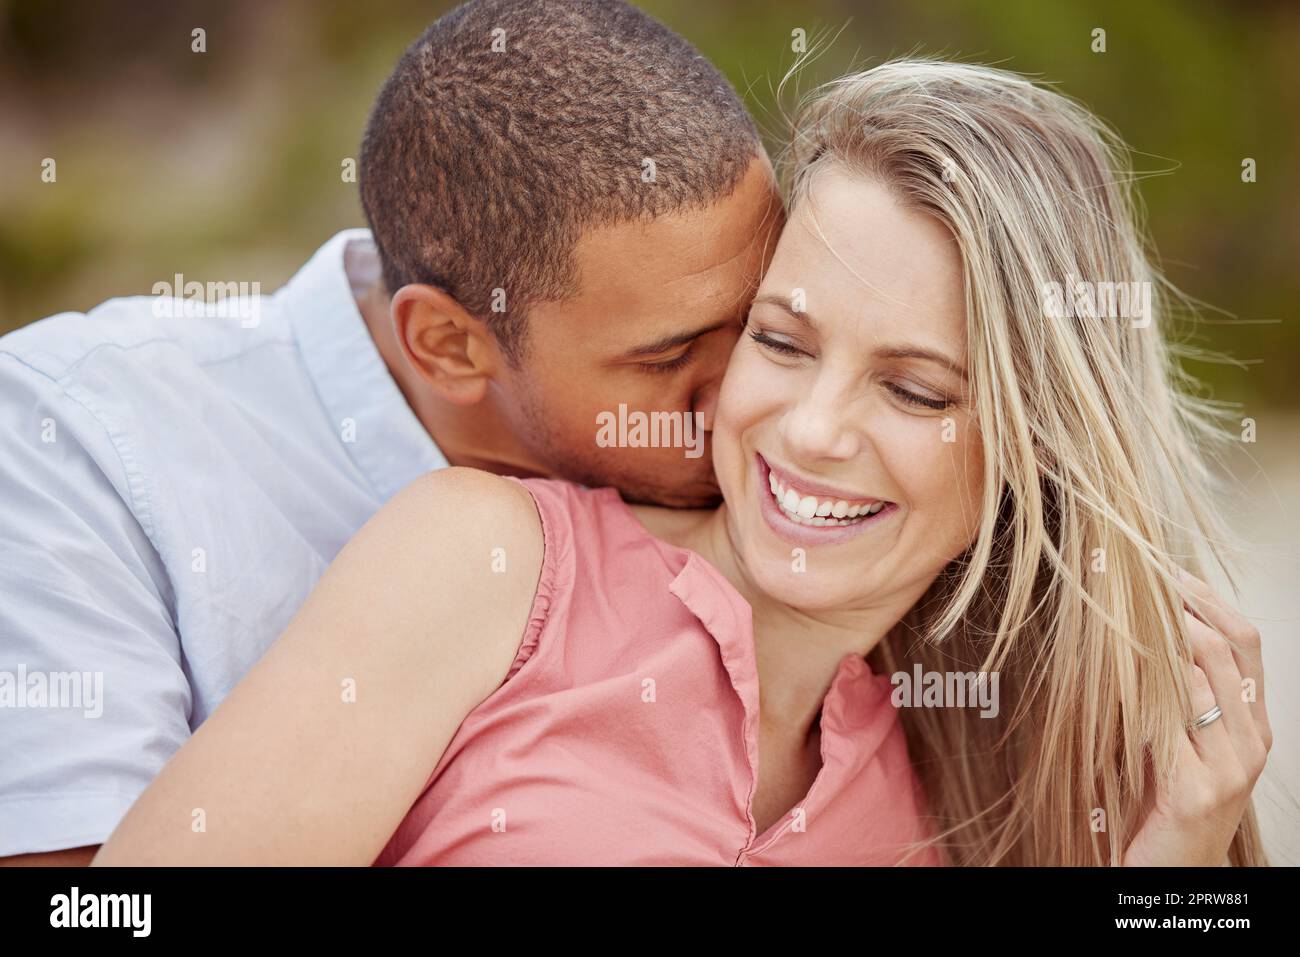 Uomo bacio collo donna immagini e fotografie stock ad alta risoluzione -  Alamy